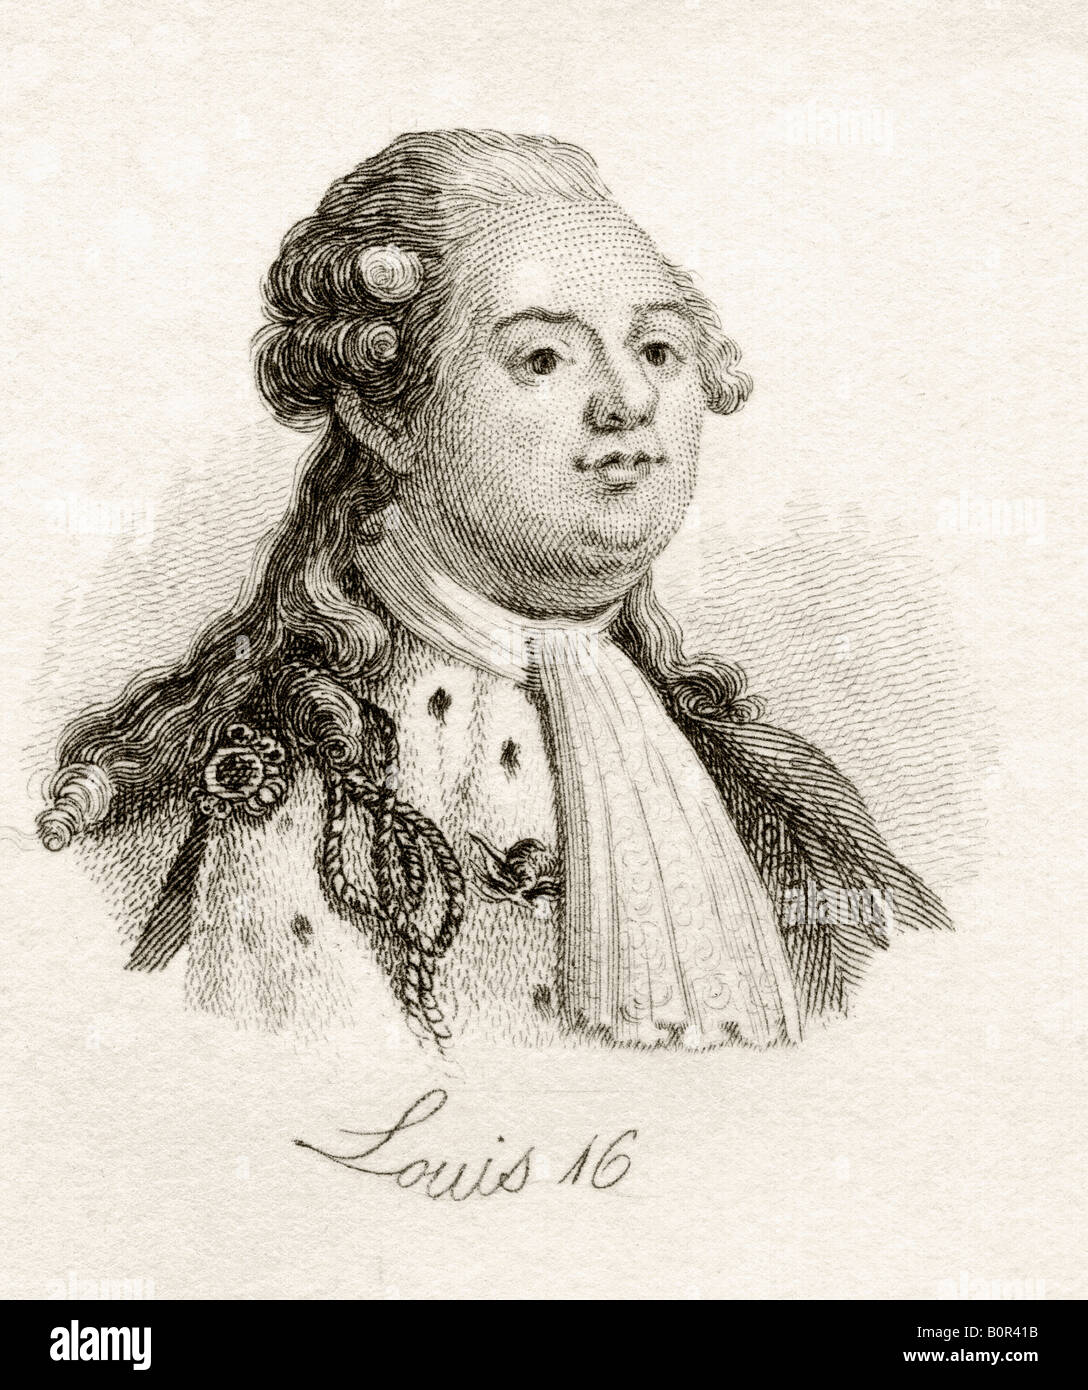 Portrait Of The King Louis Xvi Stock Photos & Portrait Of The King Louis Xvi Stock Images - Alamy